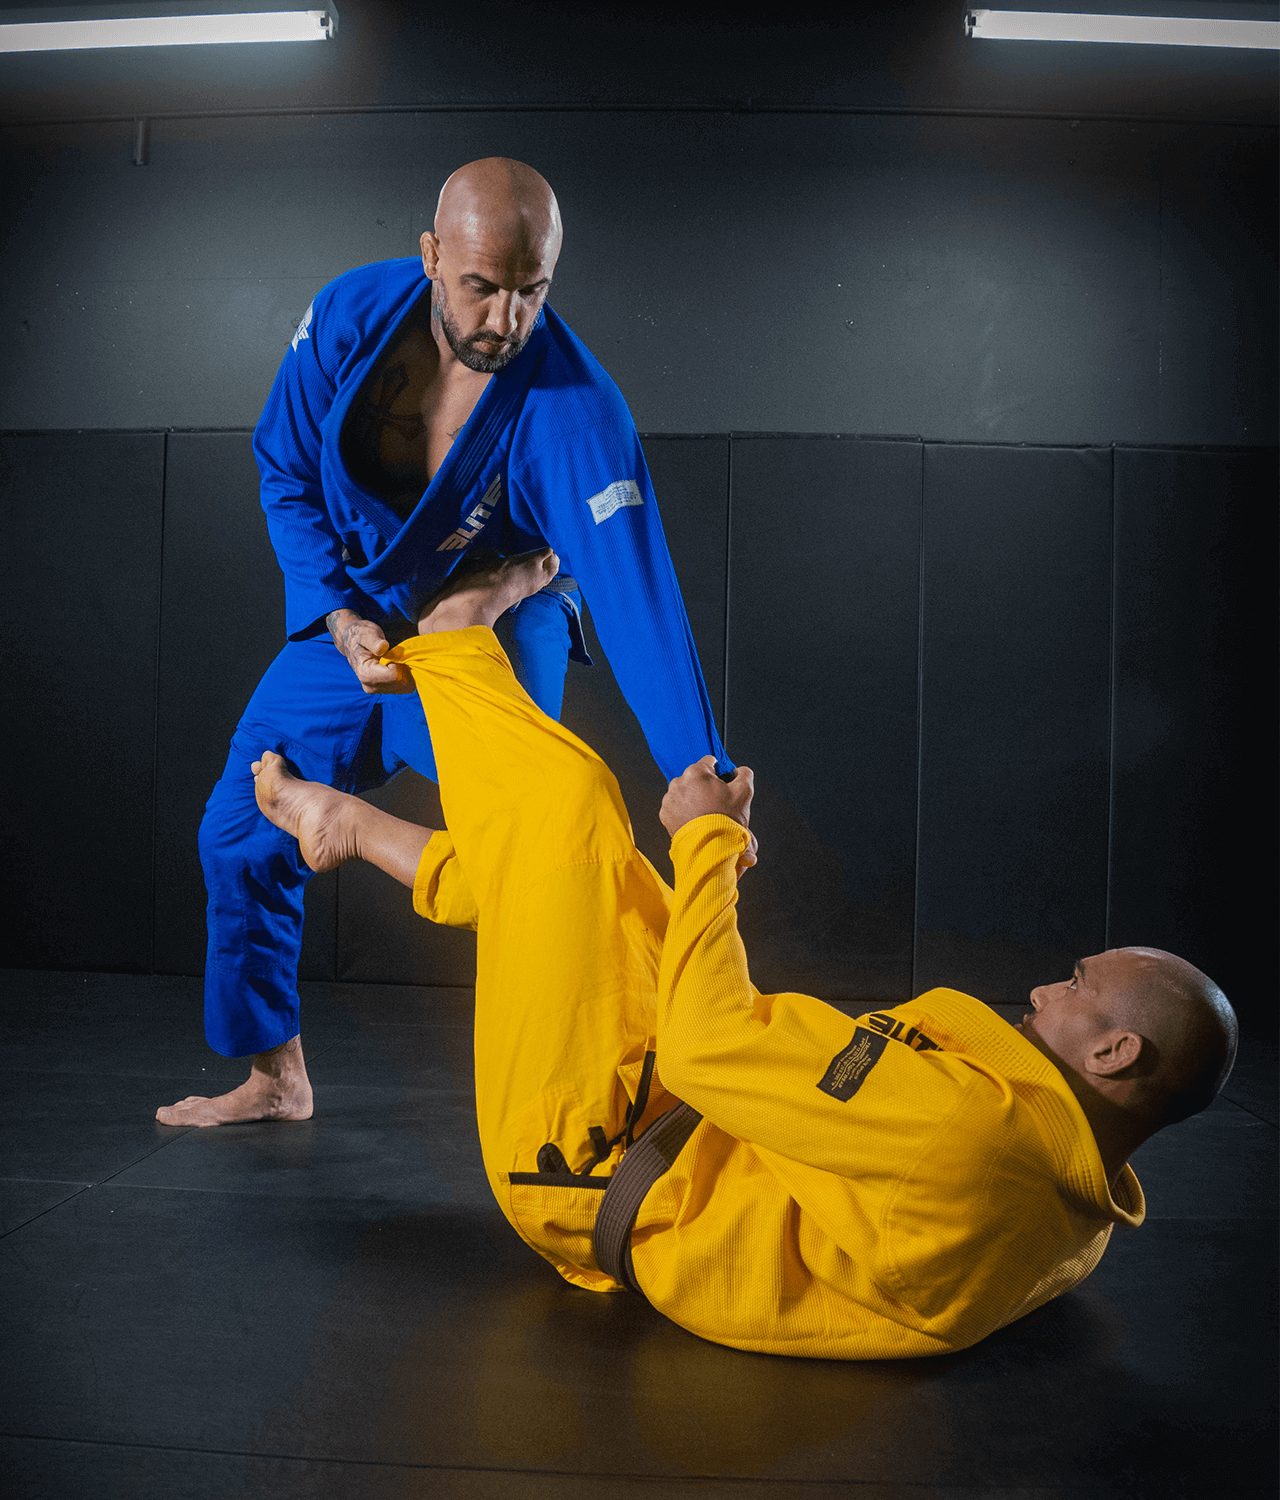 Men's Core Blue Brazilian Jiu Jitsu BJJ Gi